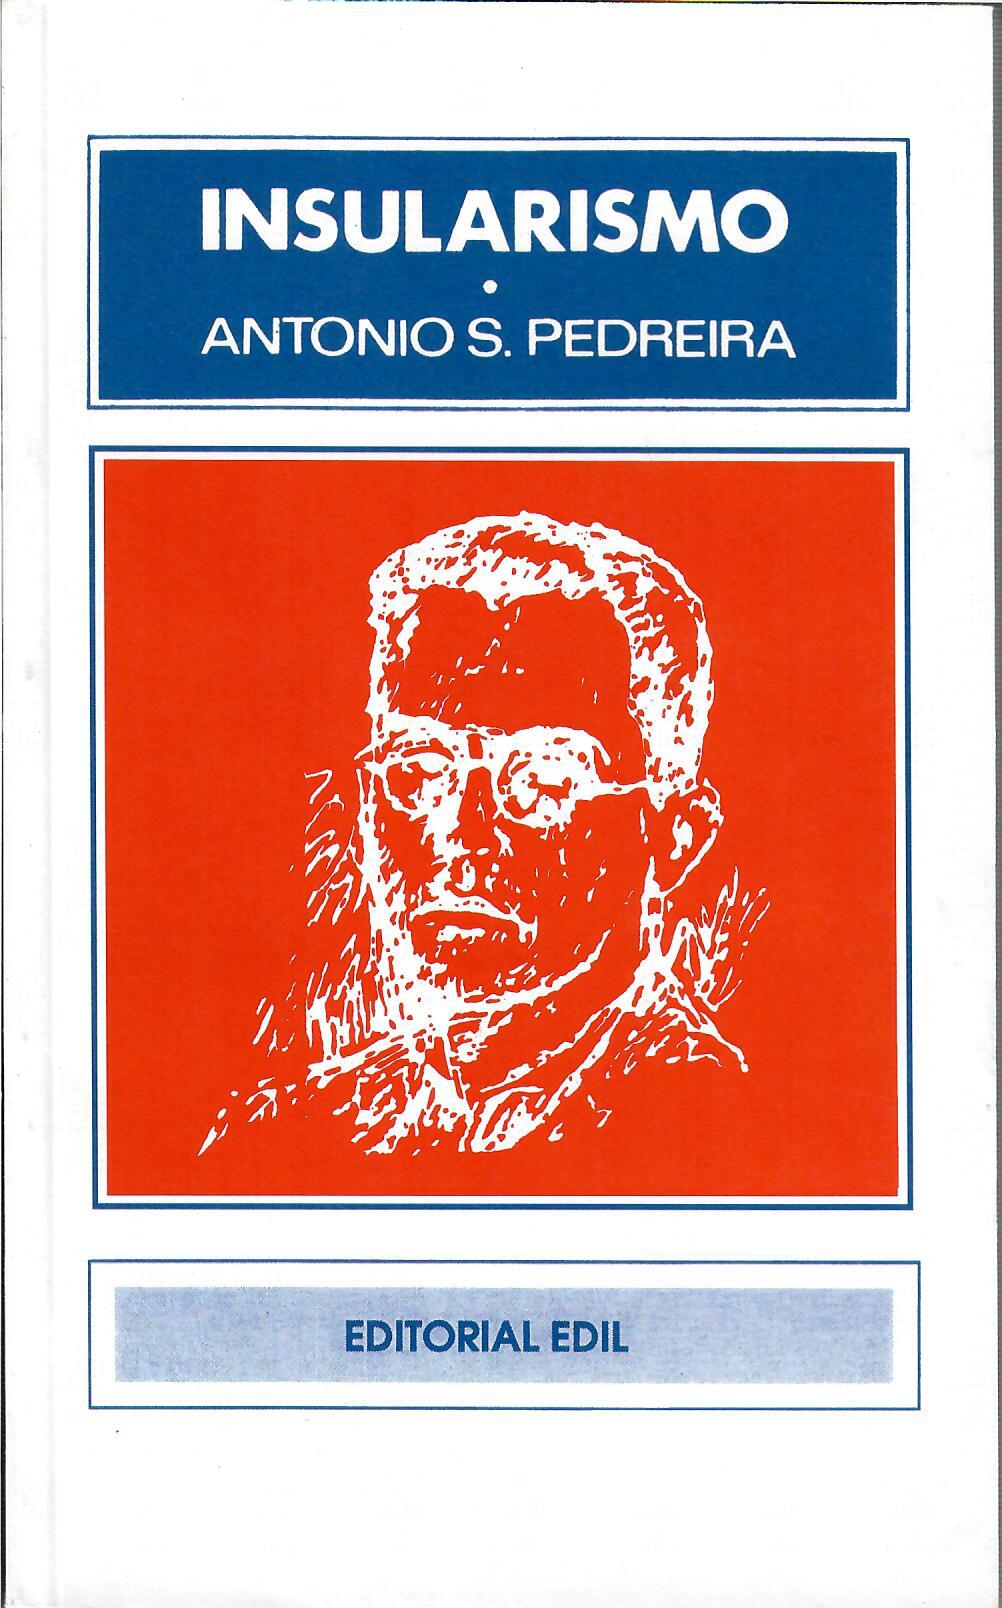 INSULARISMO - Antonio S. Pedreira